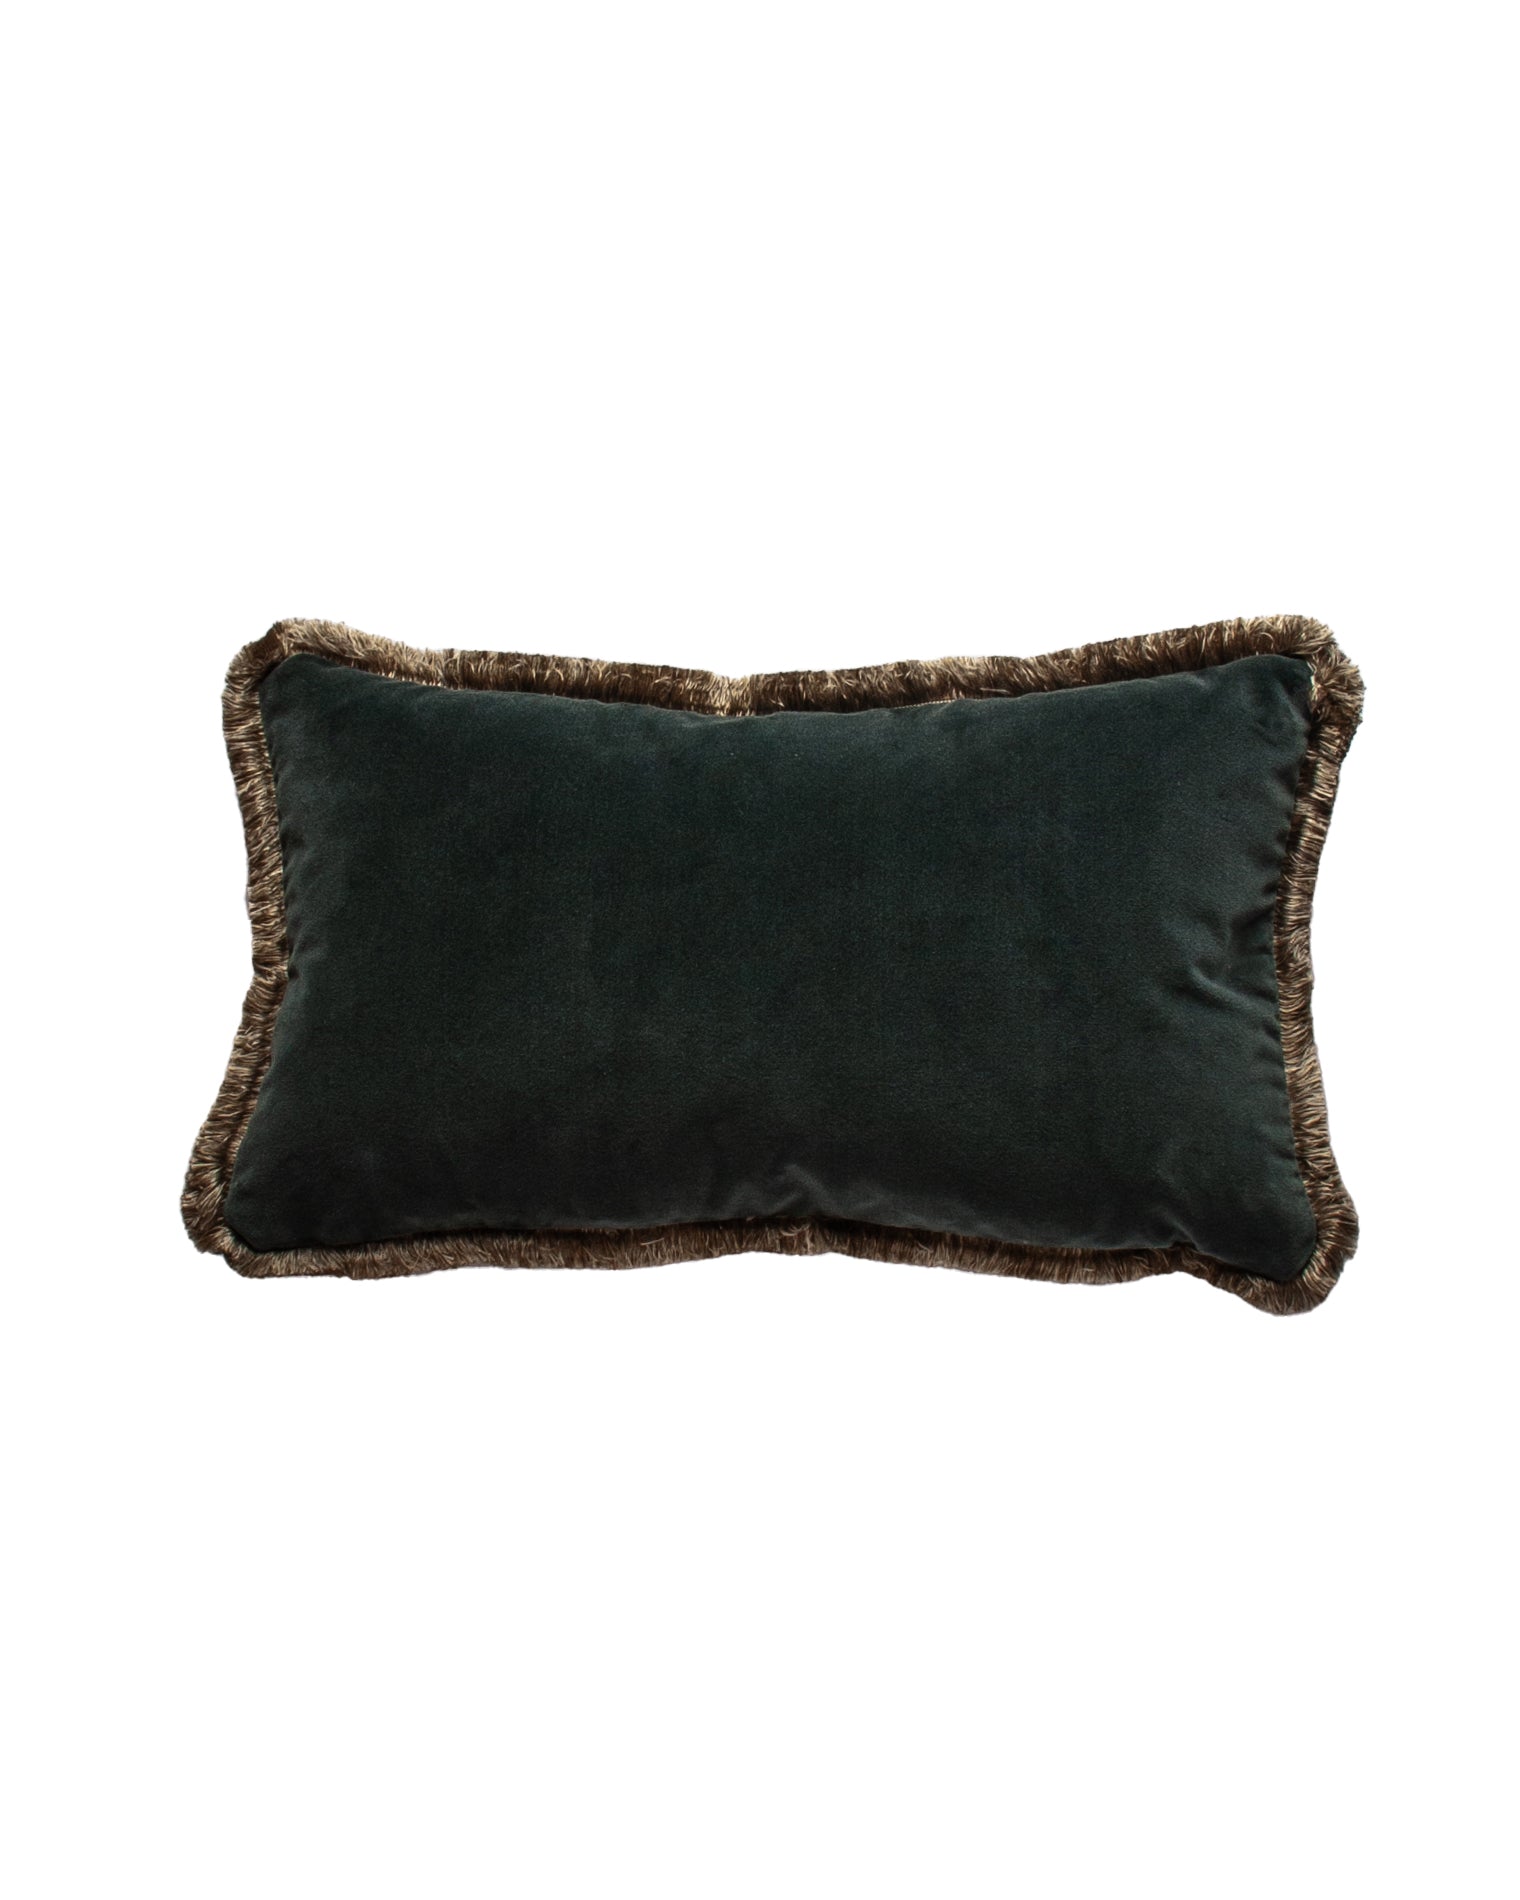 The Alana Rectangular Cushion